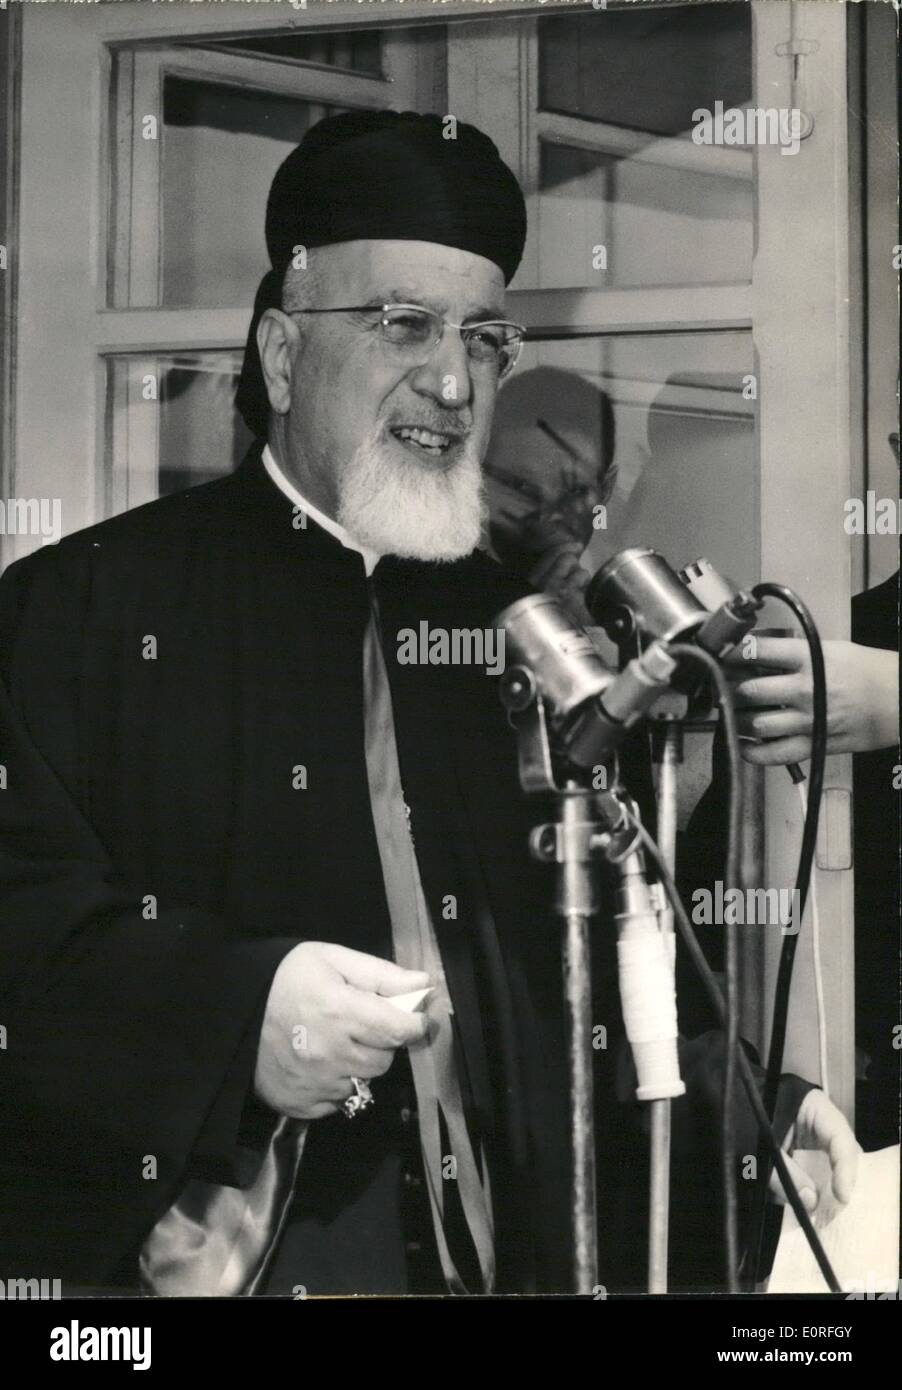 Mayo 05, 1959 - Patriarca de Antioquía sobre la visita a París: Su Beatitud Mons. Meouchi, el patriarca maronita de Antioquía y de todo Foto de stock